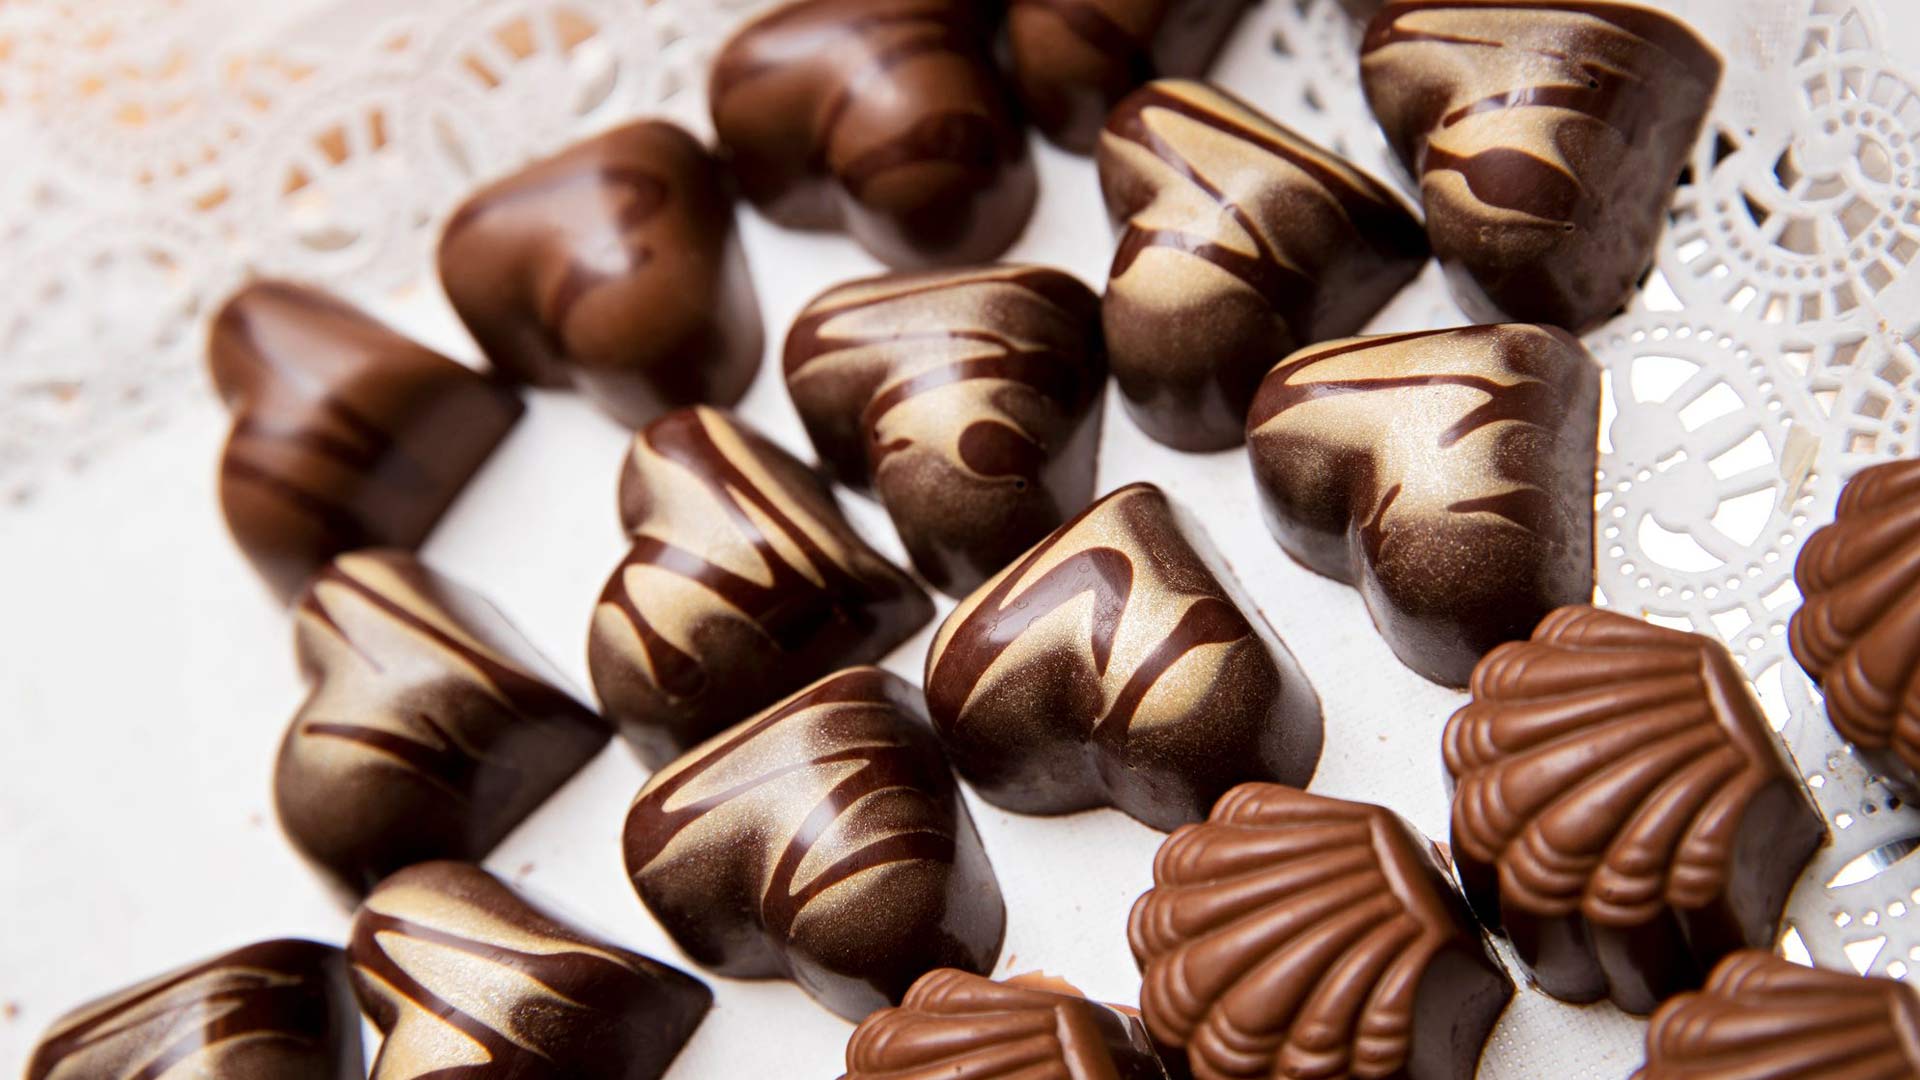 Keskimmäinen suklaasydän on eurooppalais­tyyppinen ganache, täyteläinen ja tumma.